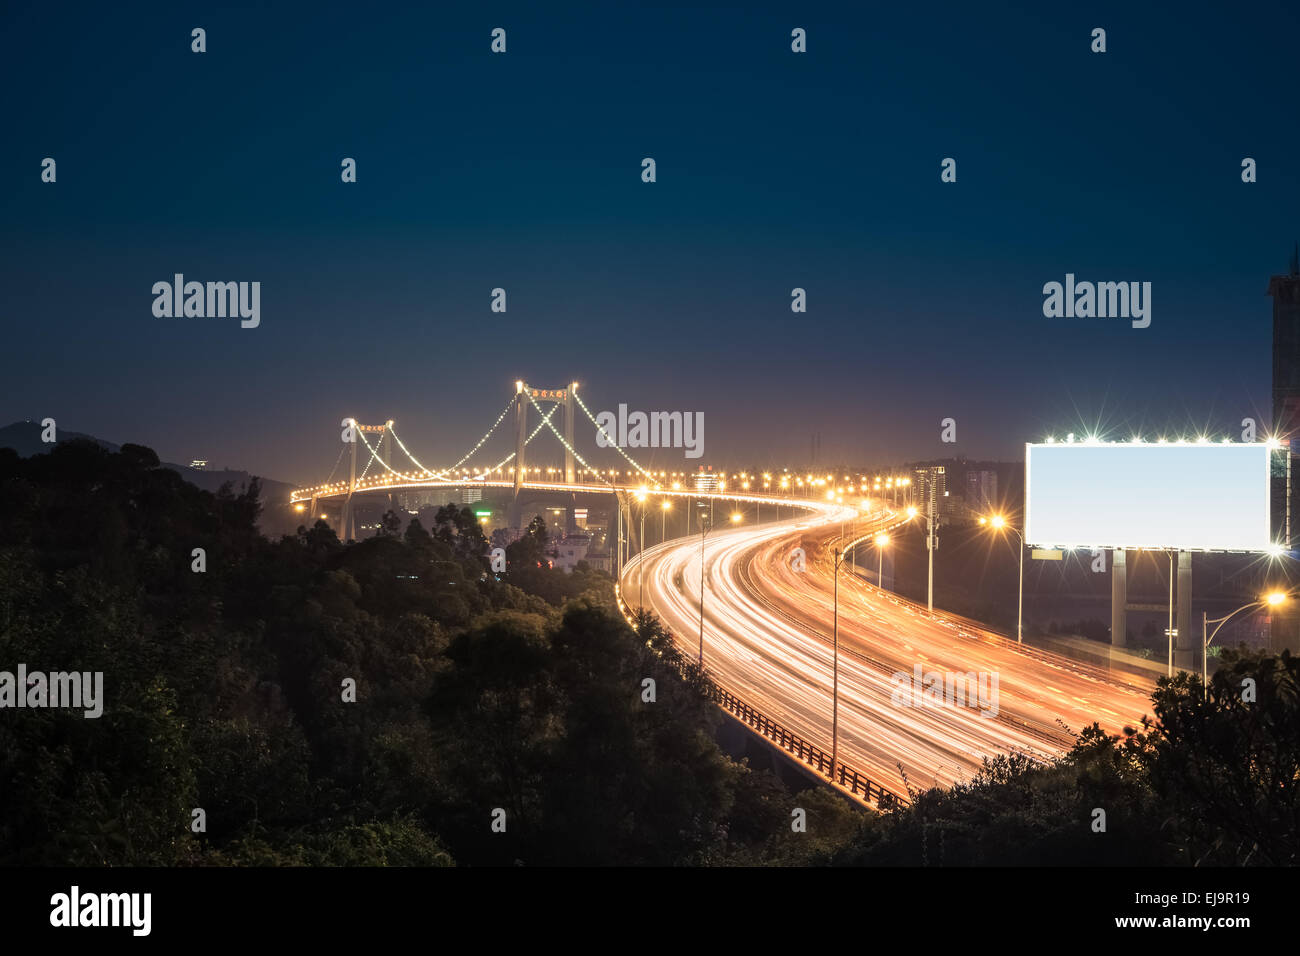 Xiamen haicang bridge at night Banque D'Images